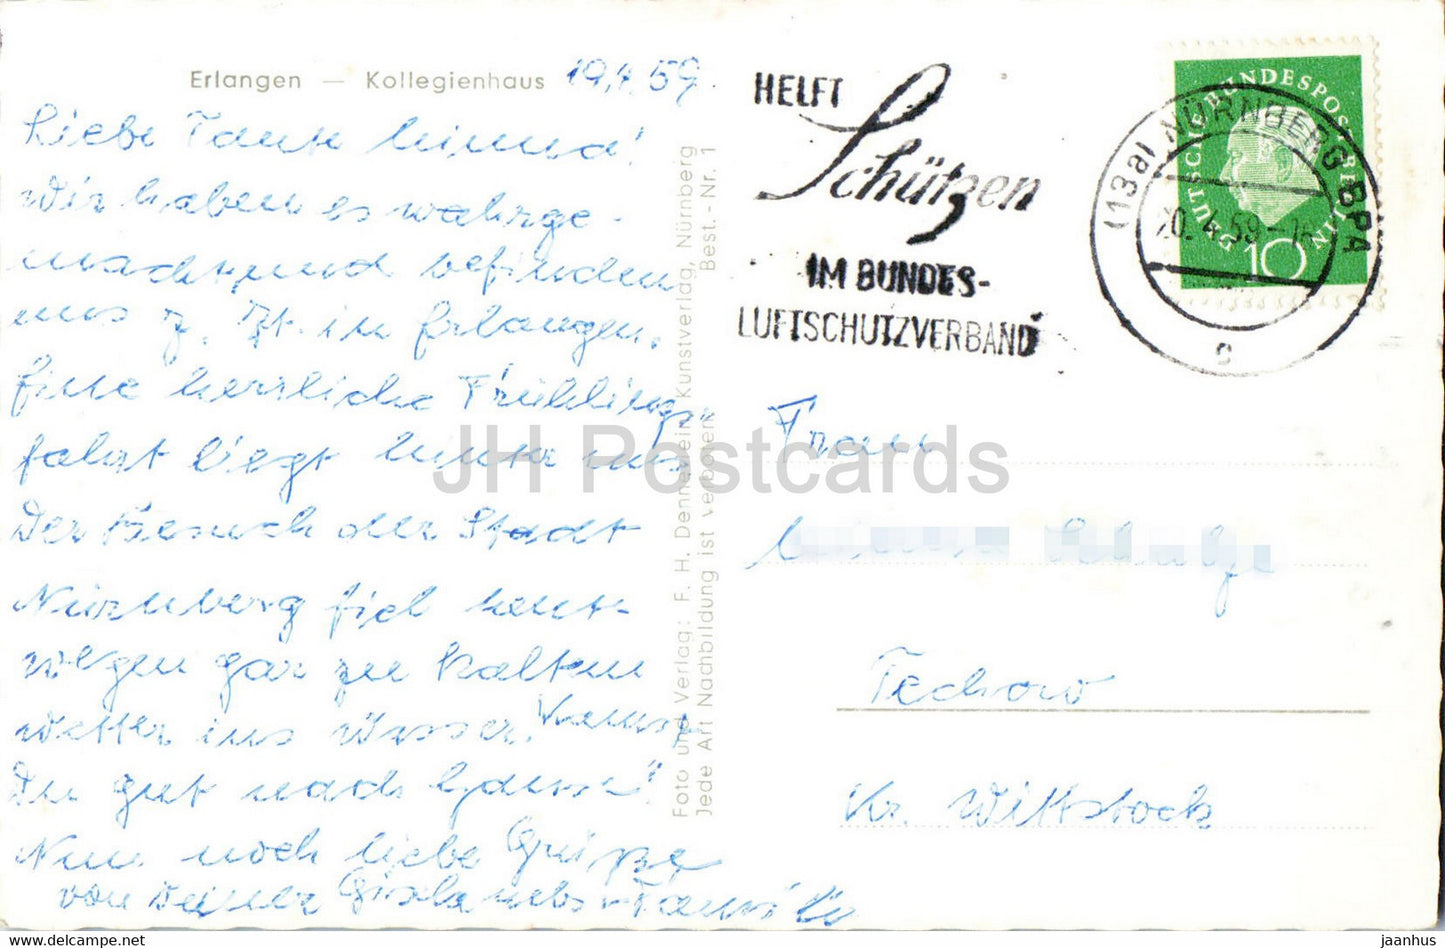 Erlangen - Kollegienhaus - old postcard - 1959 - Germany - used